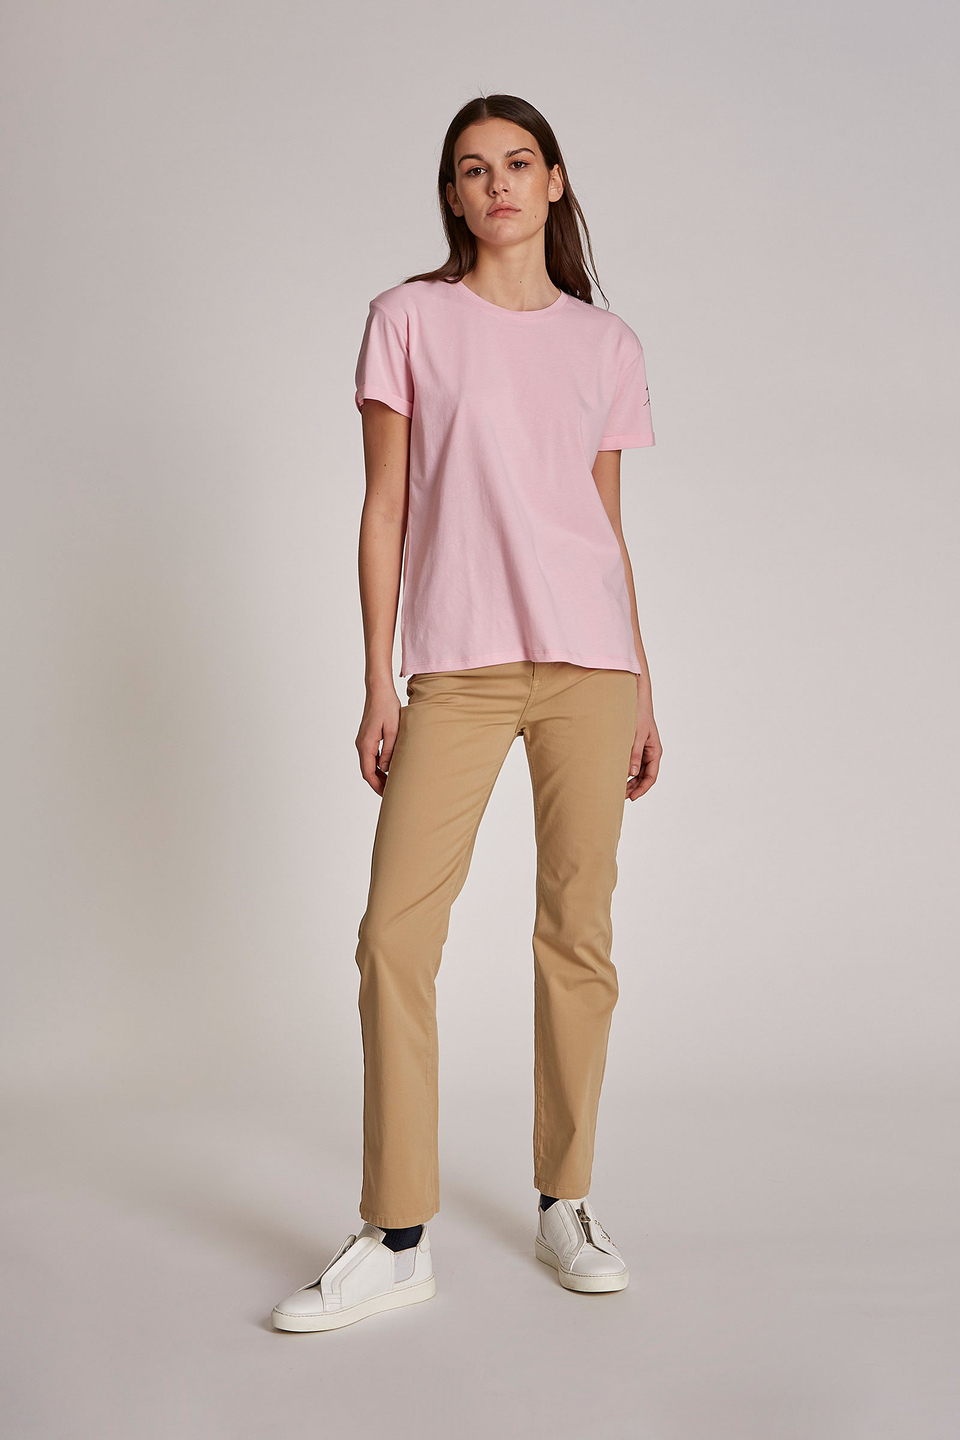 Pantalón de mujer con cinco bolsillos de algodón elástico, corte regular - La Martina - Official Online Shop